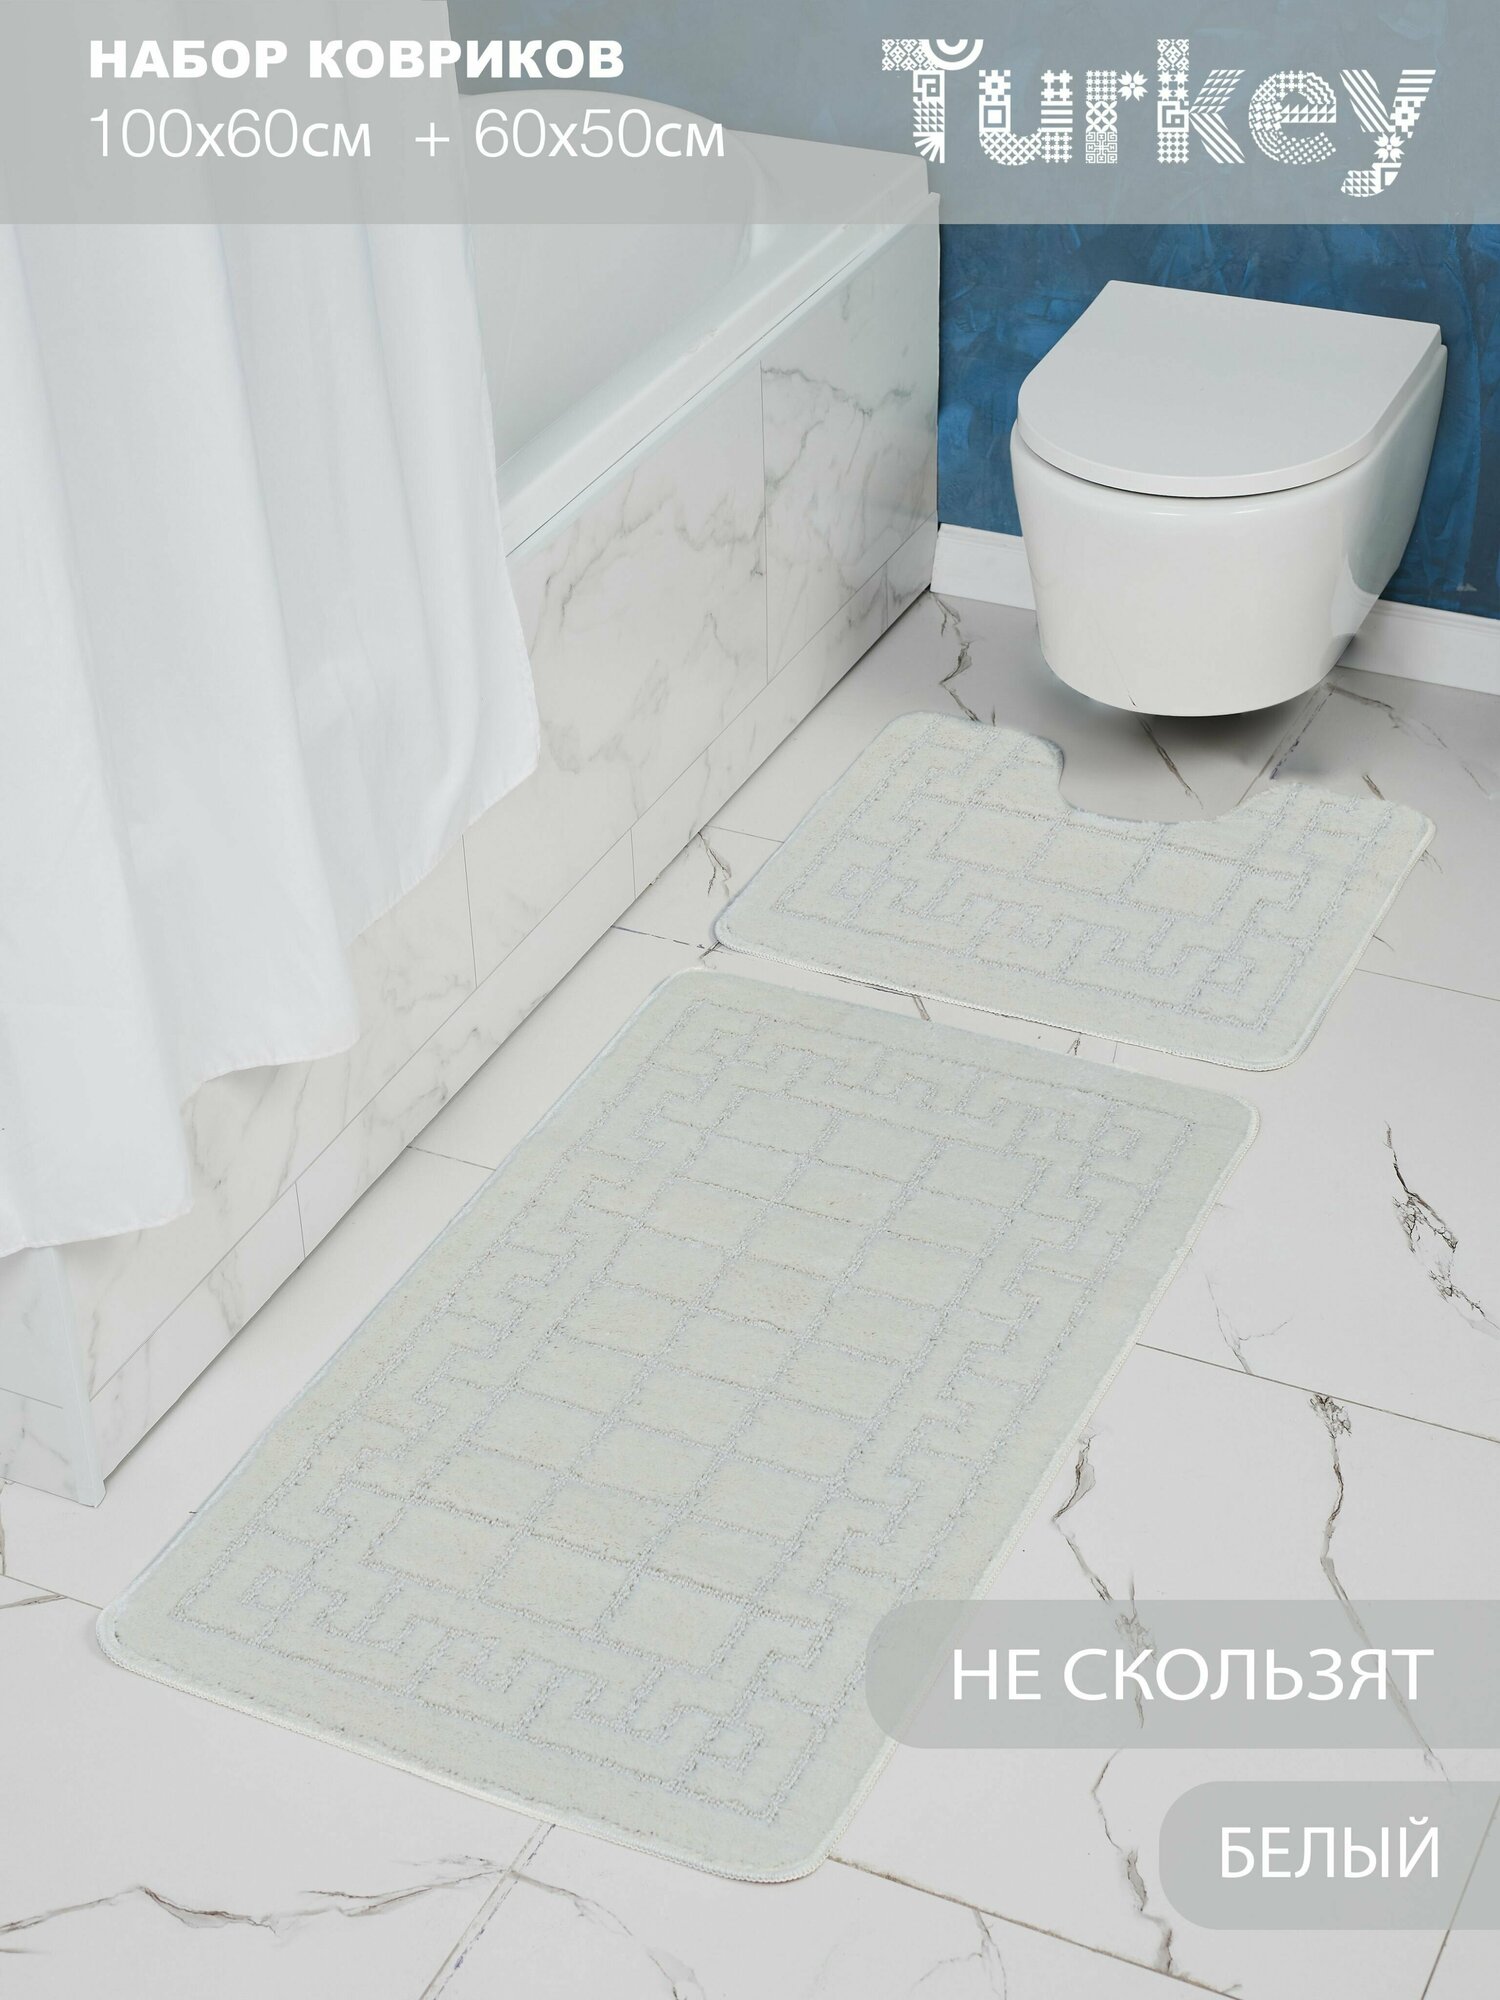 Набор противоскользящих ковриков для ванной и туалета, кремовый, Solin 100*60+50*60, 2 шт.